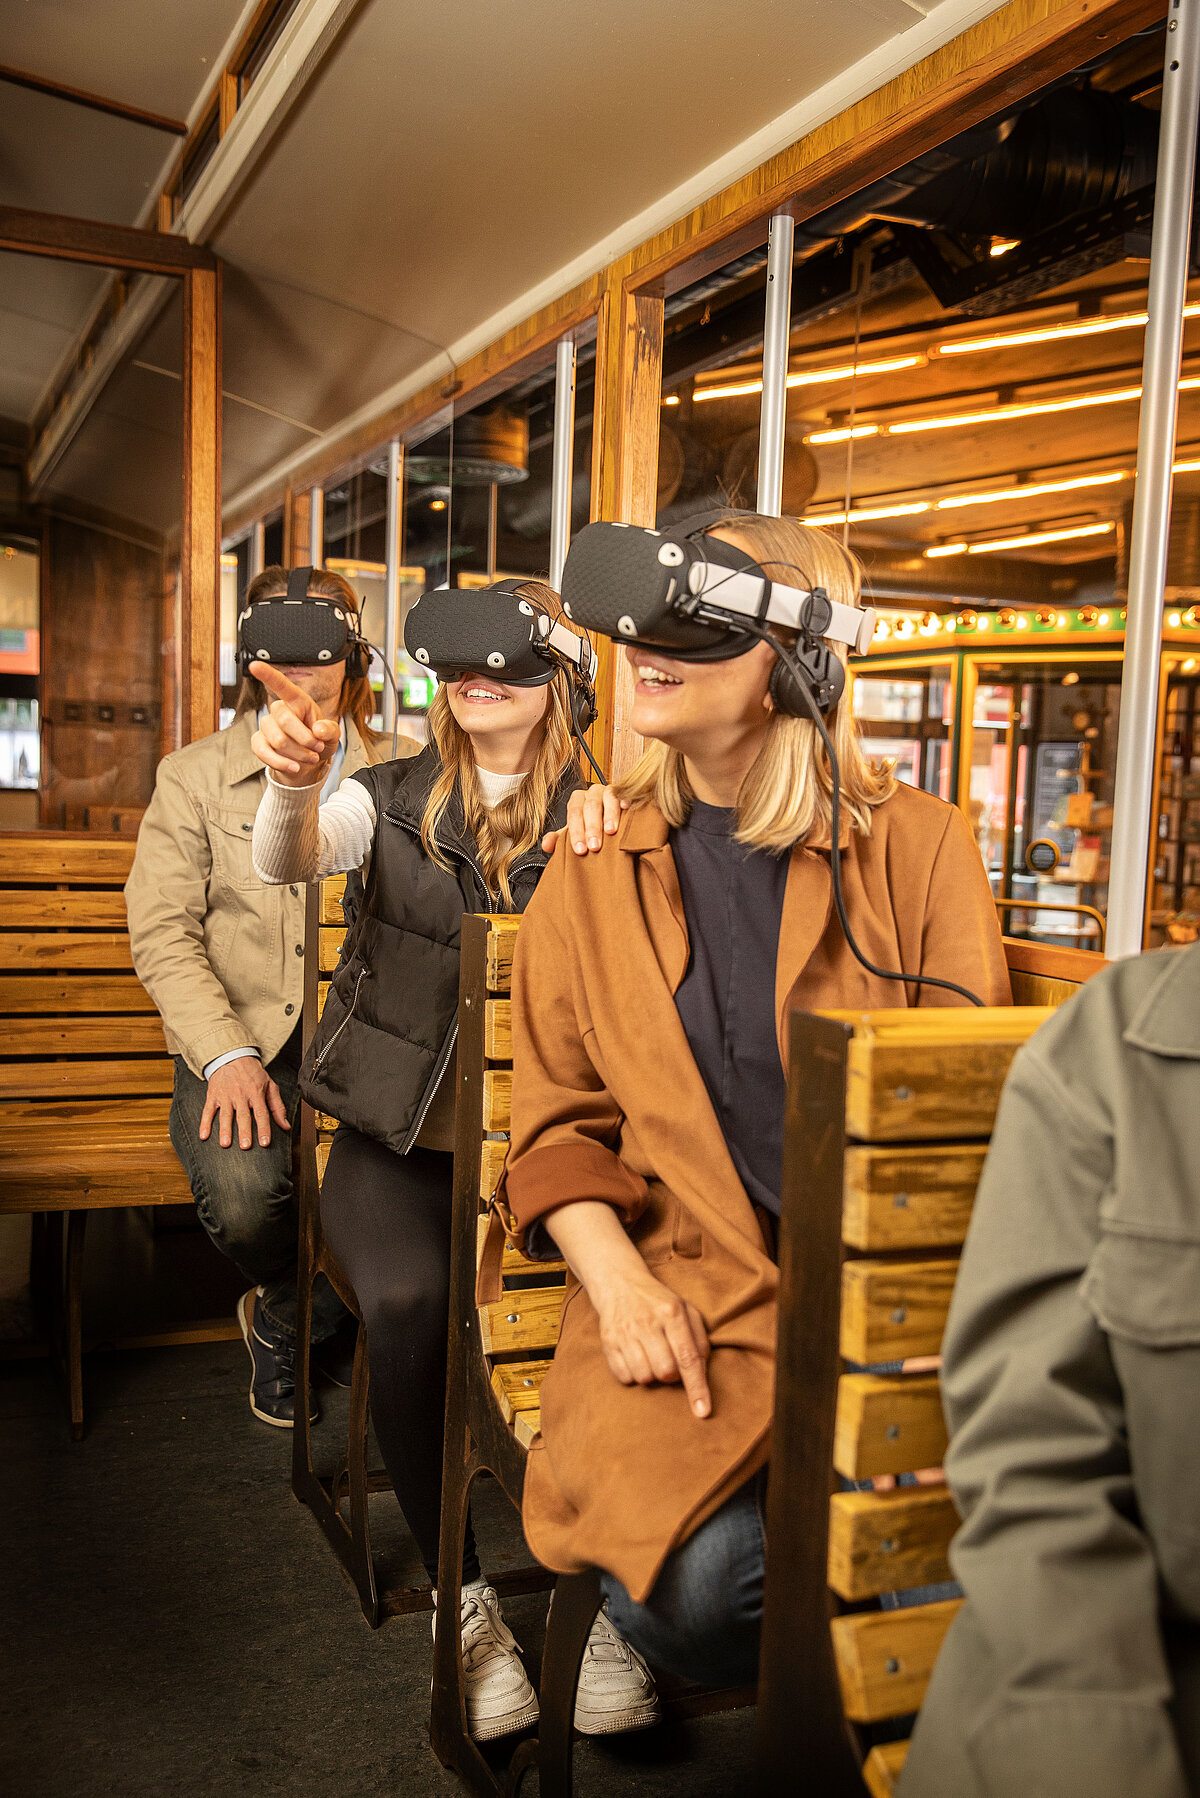 Gäste im Nachbau einer alten Tram, die VR-Brillen auf dem Kopf haben.